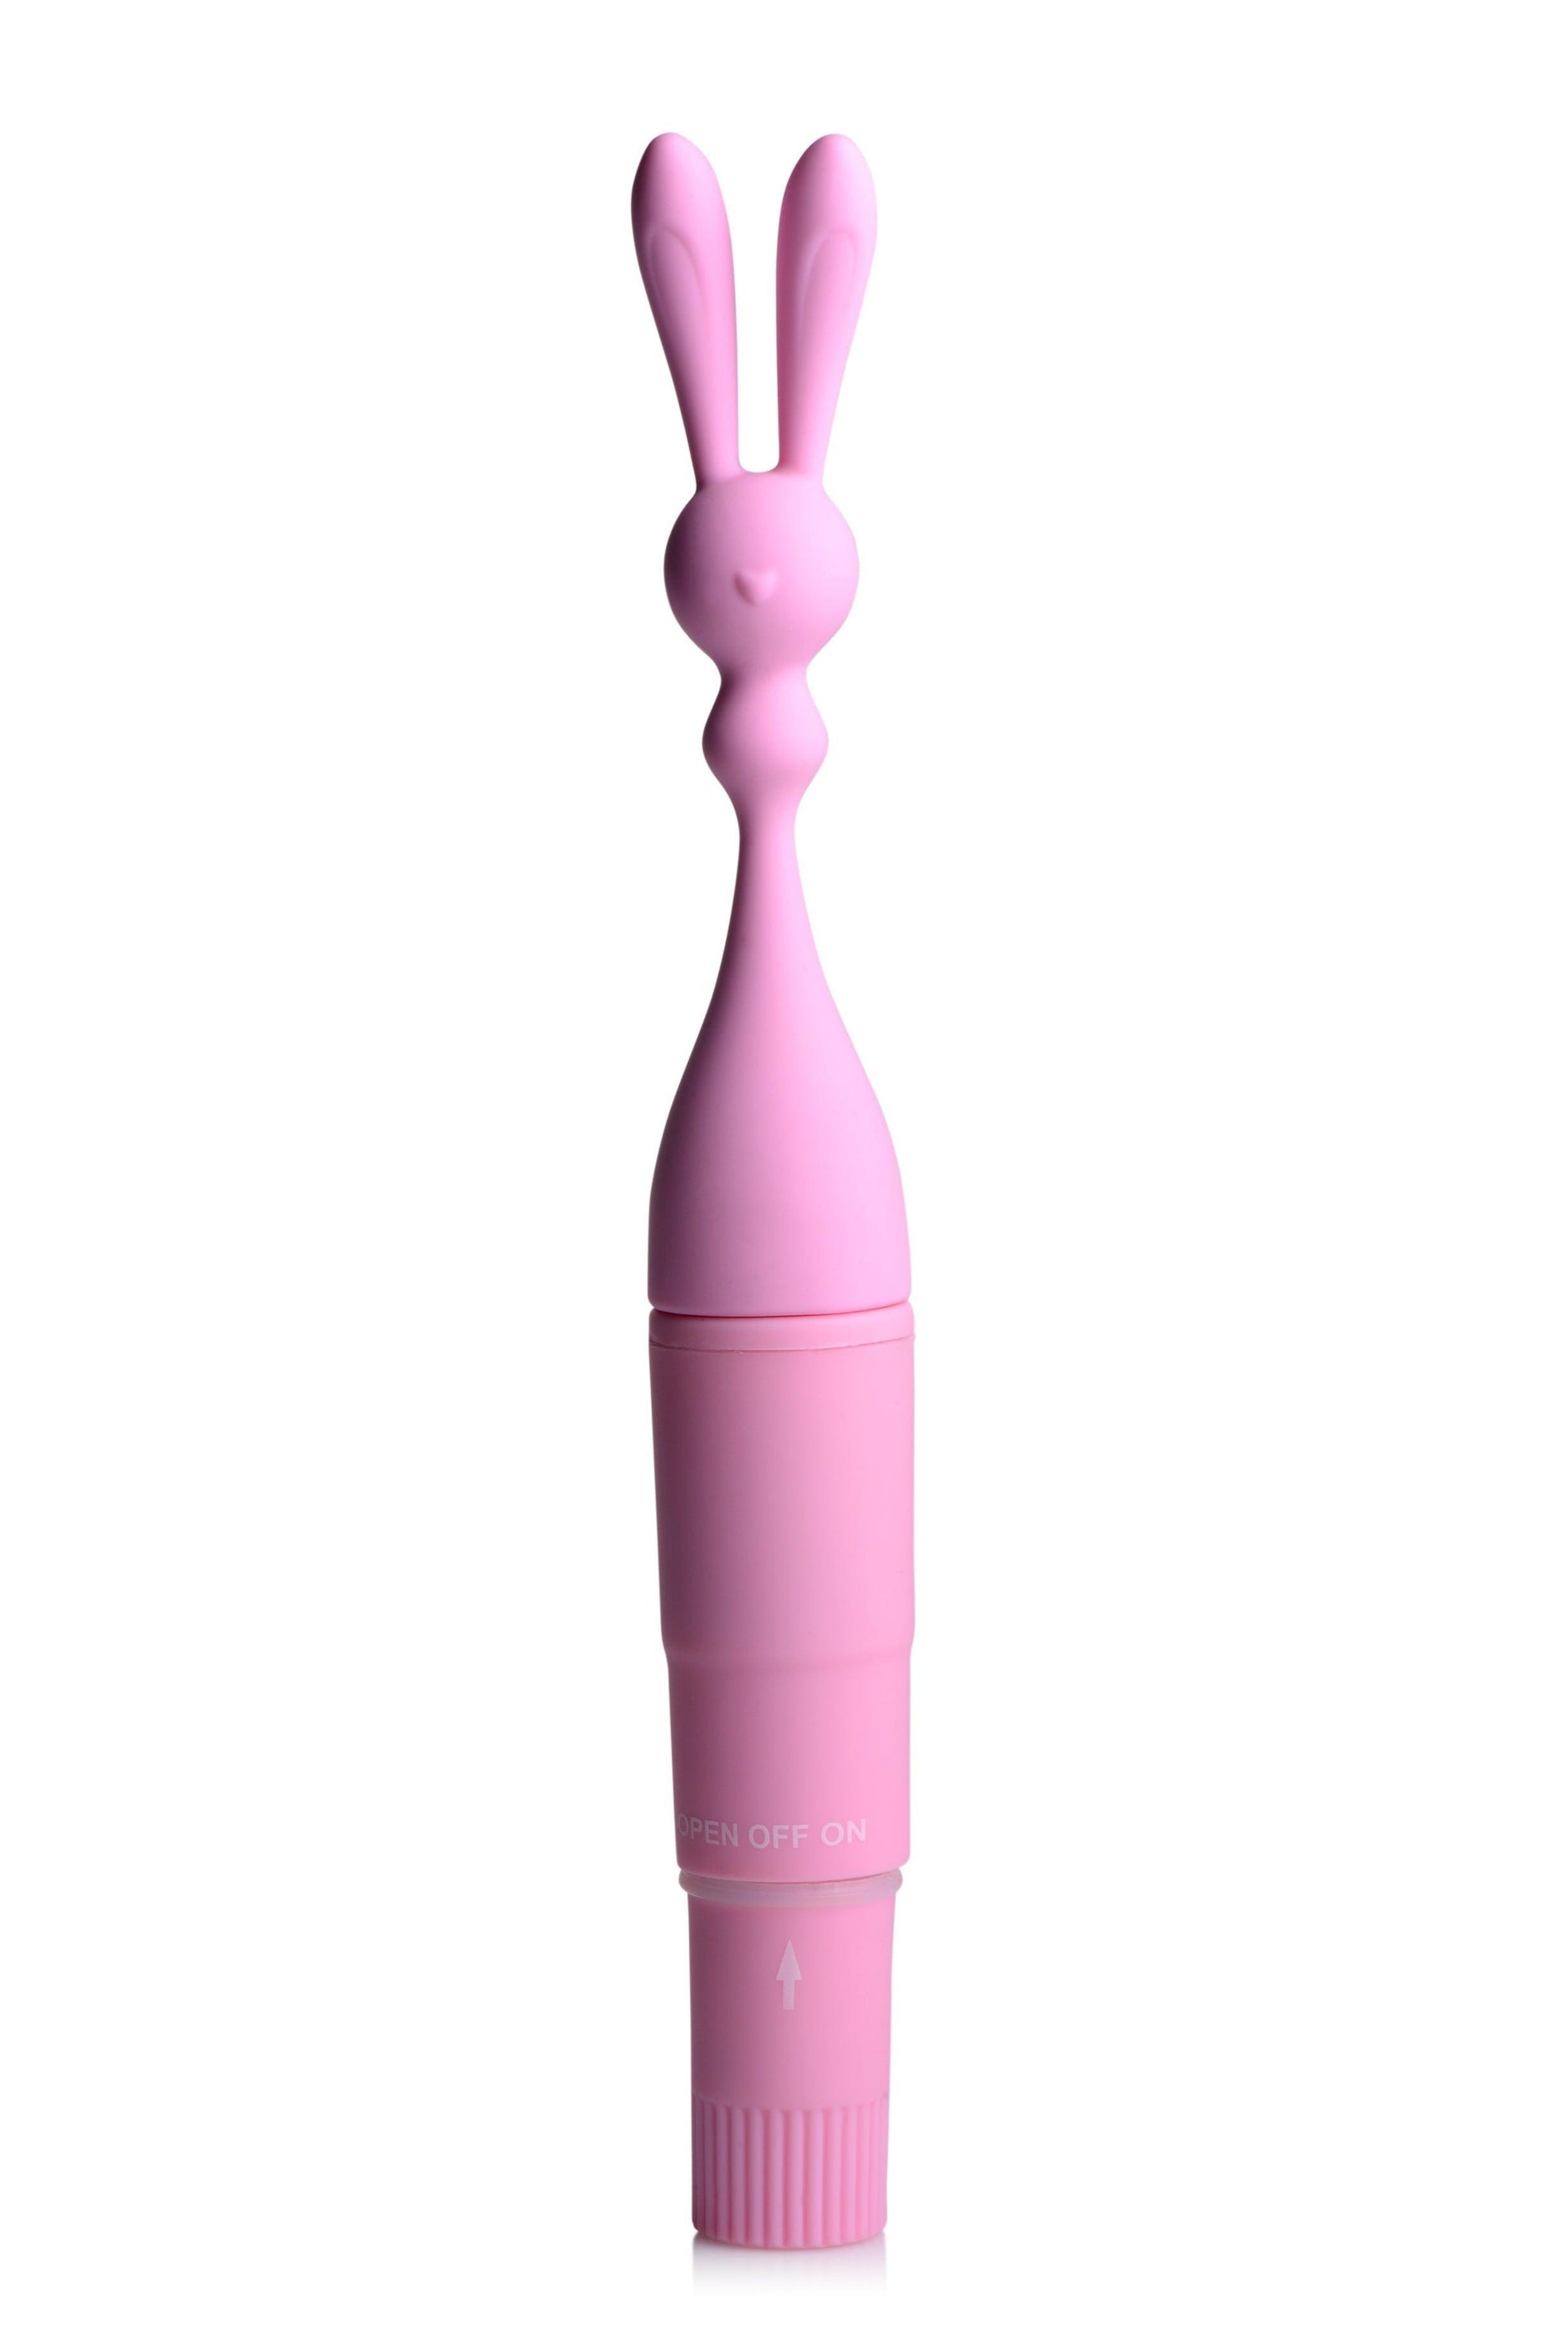 Bunny Rocket Silicone Vibrator - Take A Peek